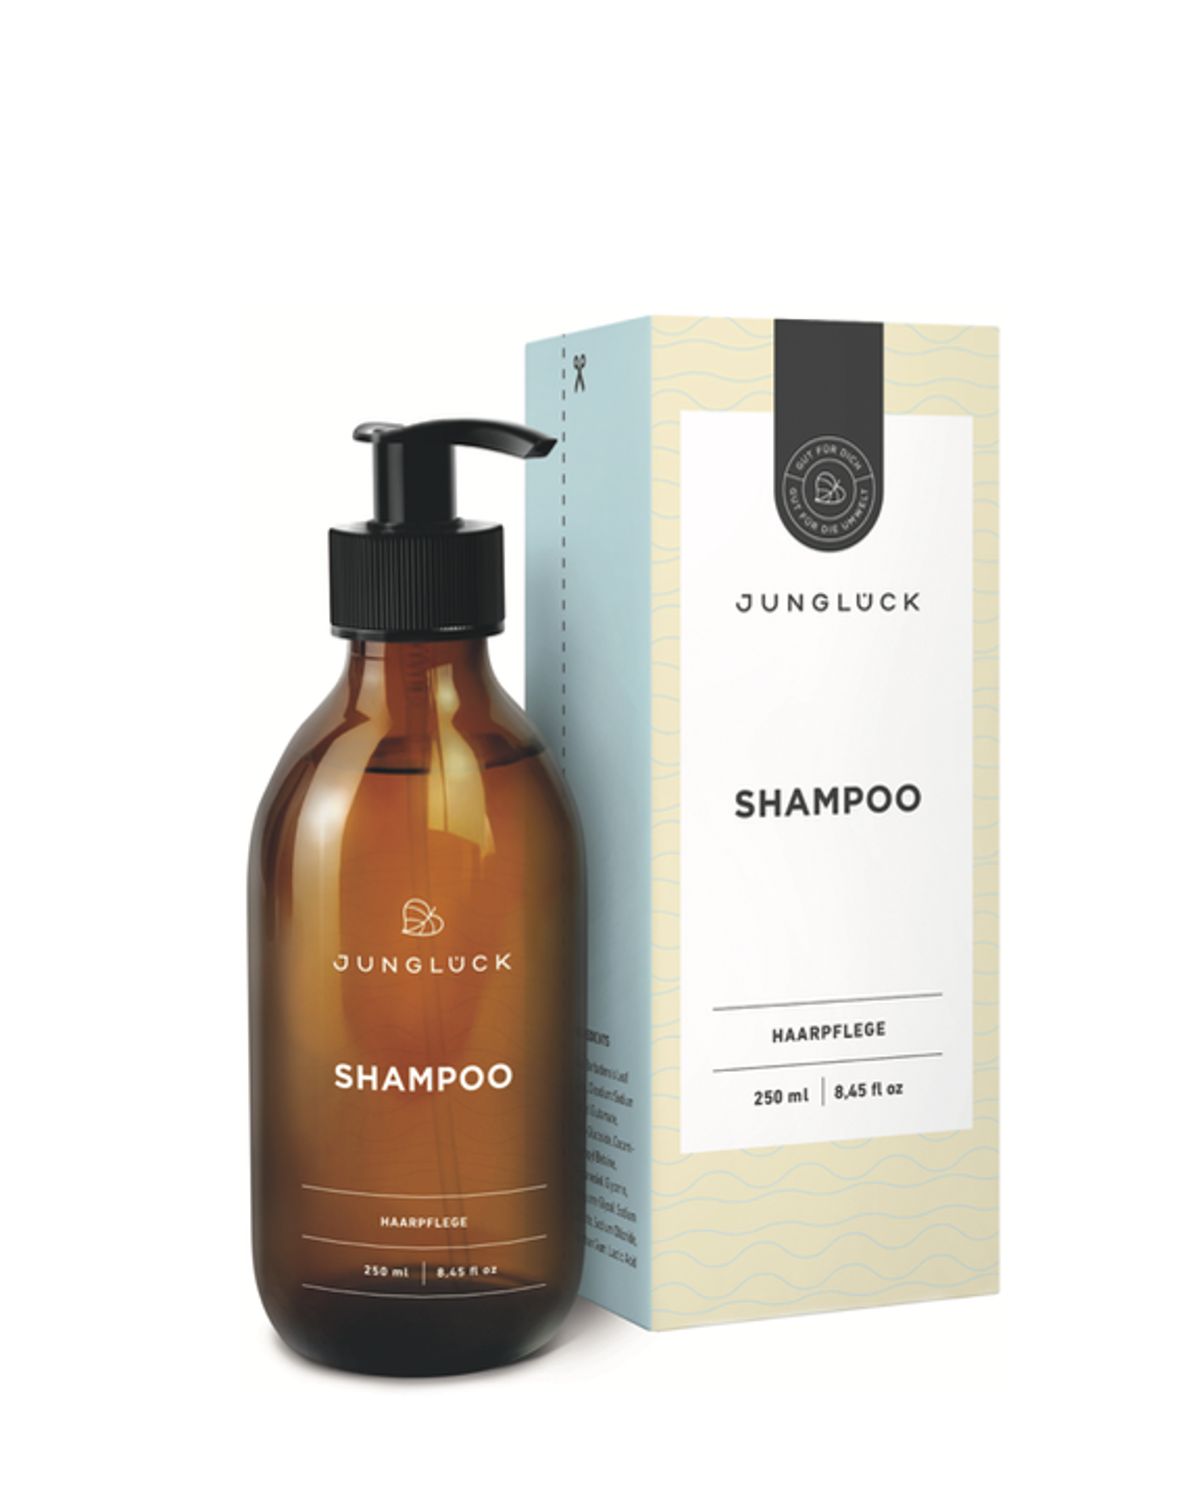 Shampoo von Junglück